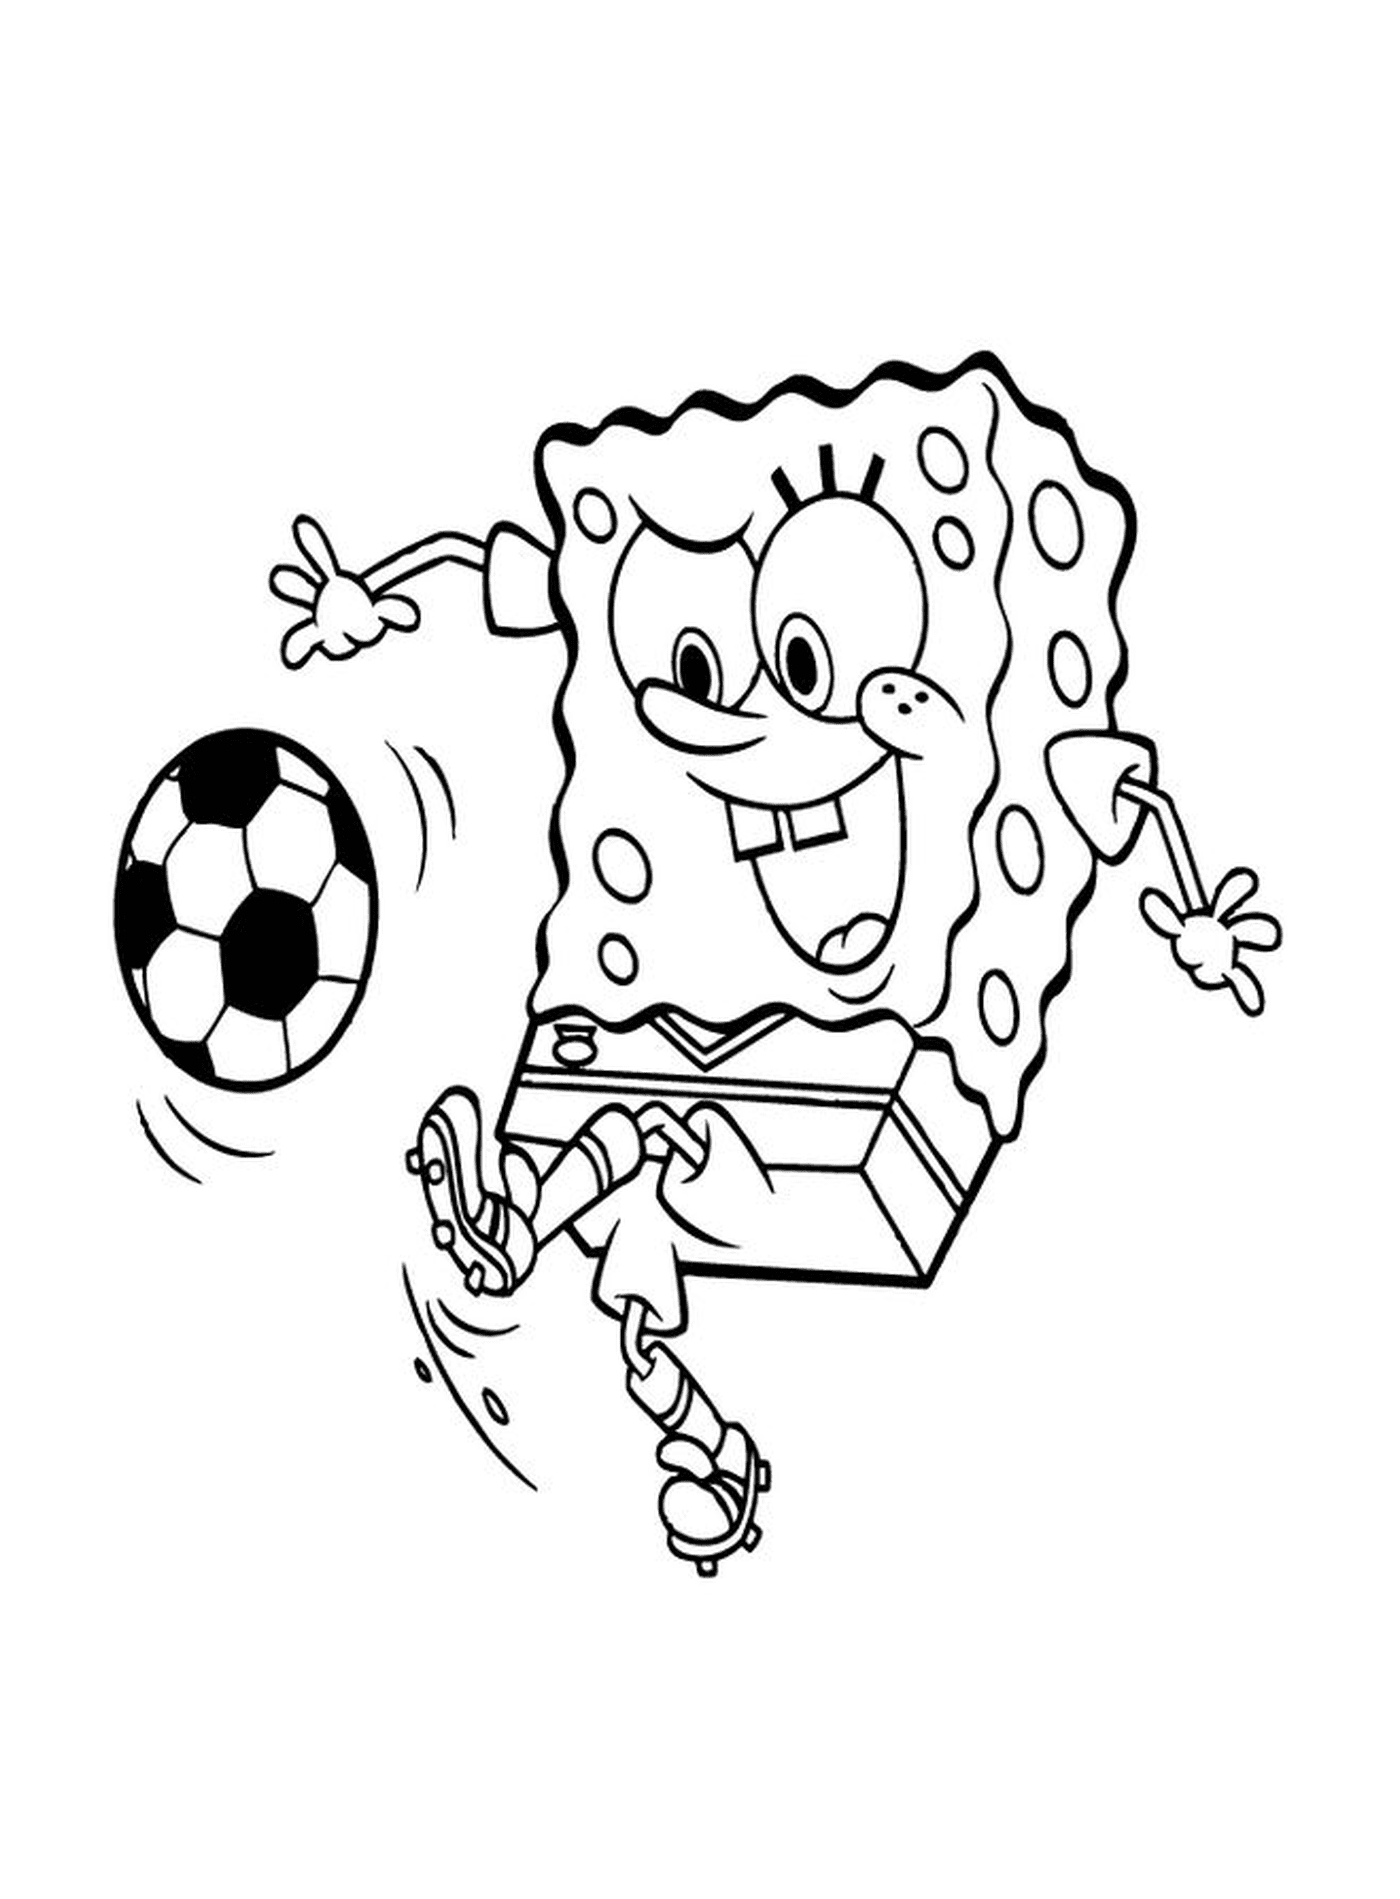  Bob Esponja jugando al fútbol 